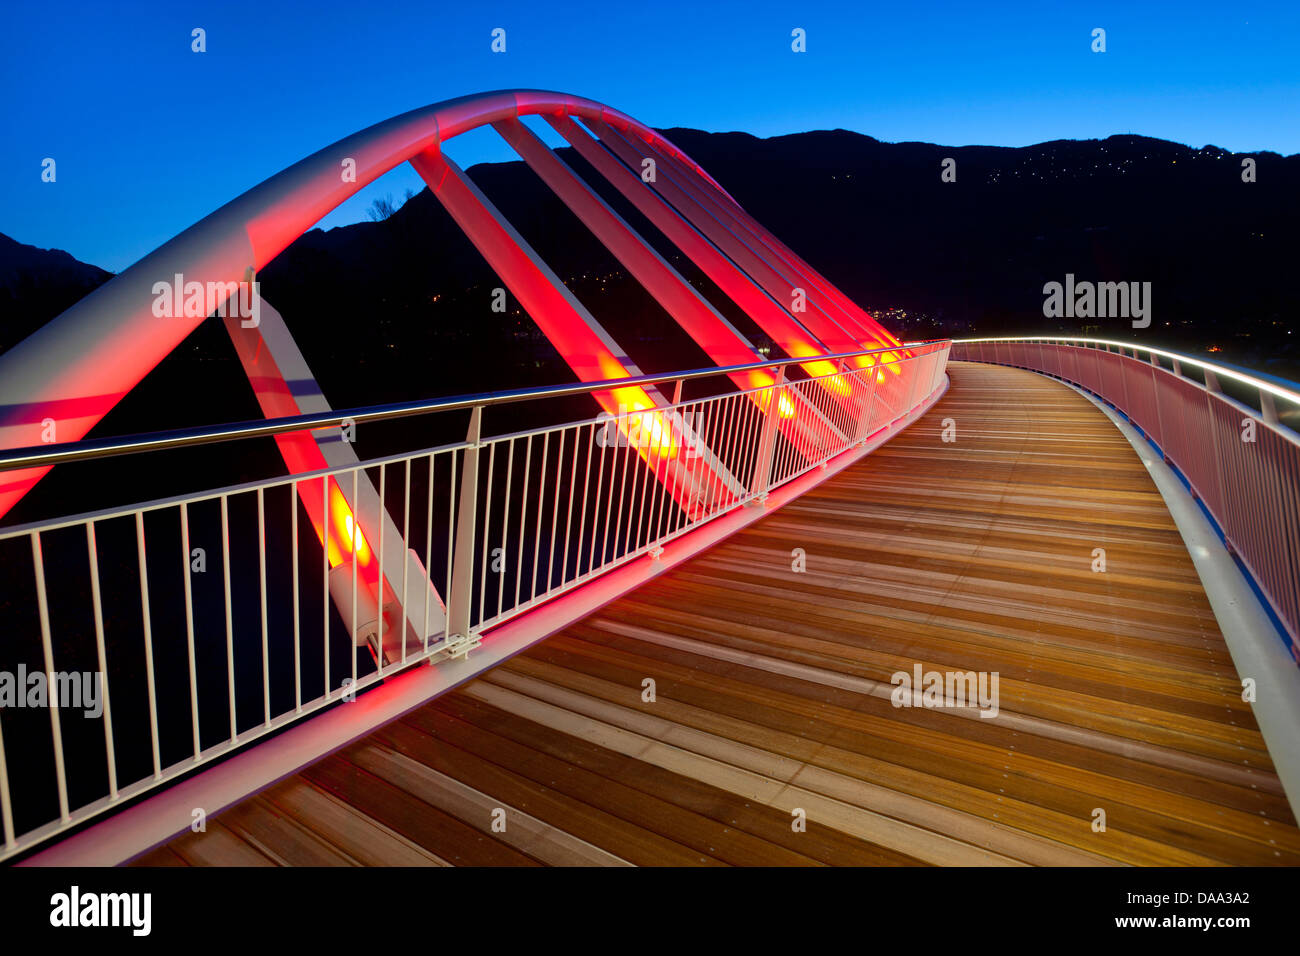 Bellinzona, pista ciclabile, Svizzera, Europa, del cantone Ticino, modo, bridge, notte, illuminazione, Foto Stock